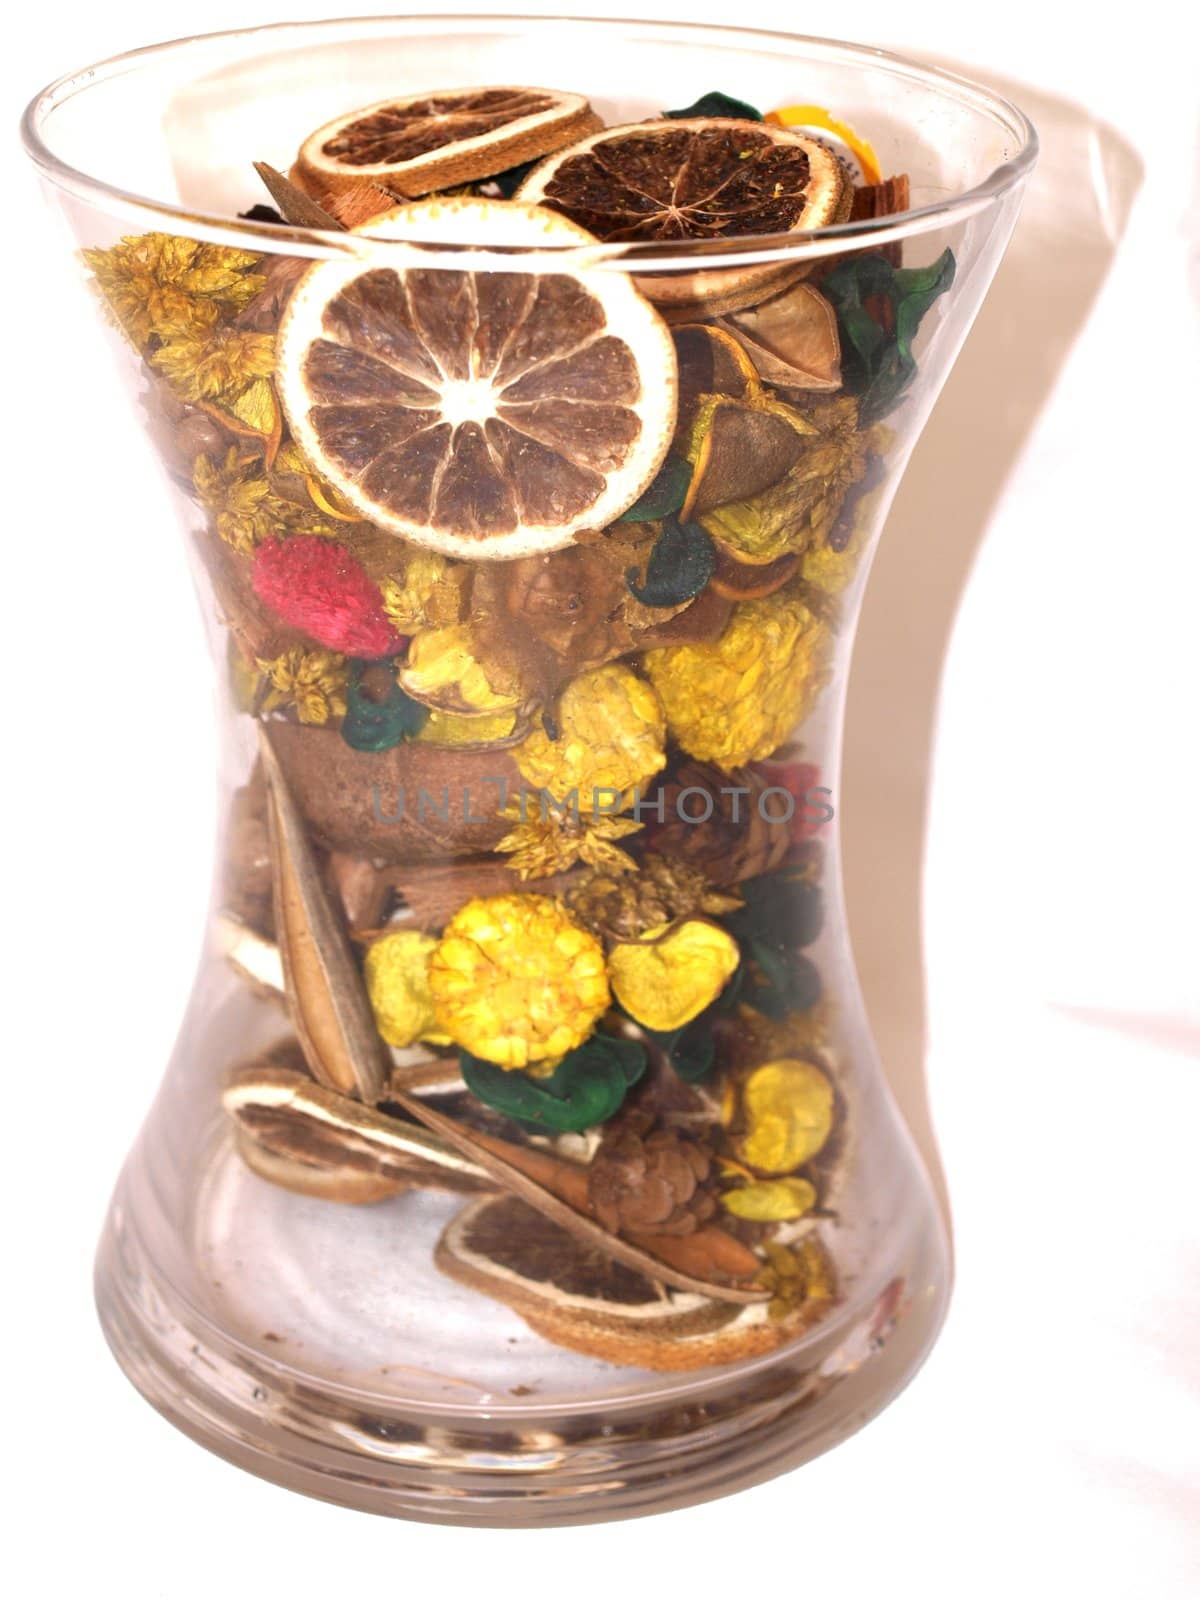 vase full of dried flowers by lulu2626